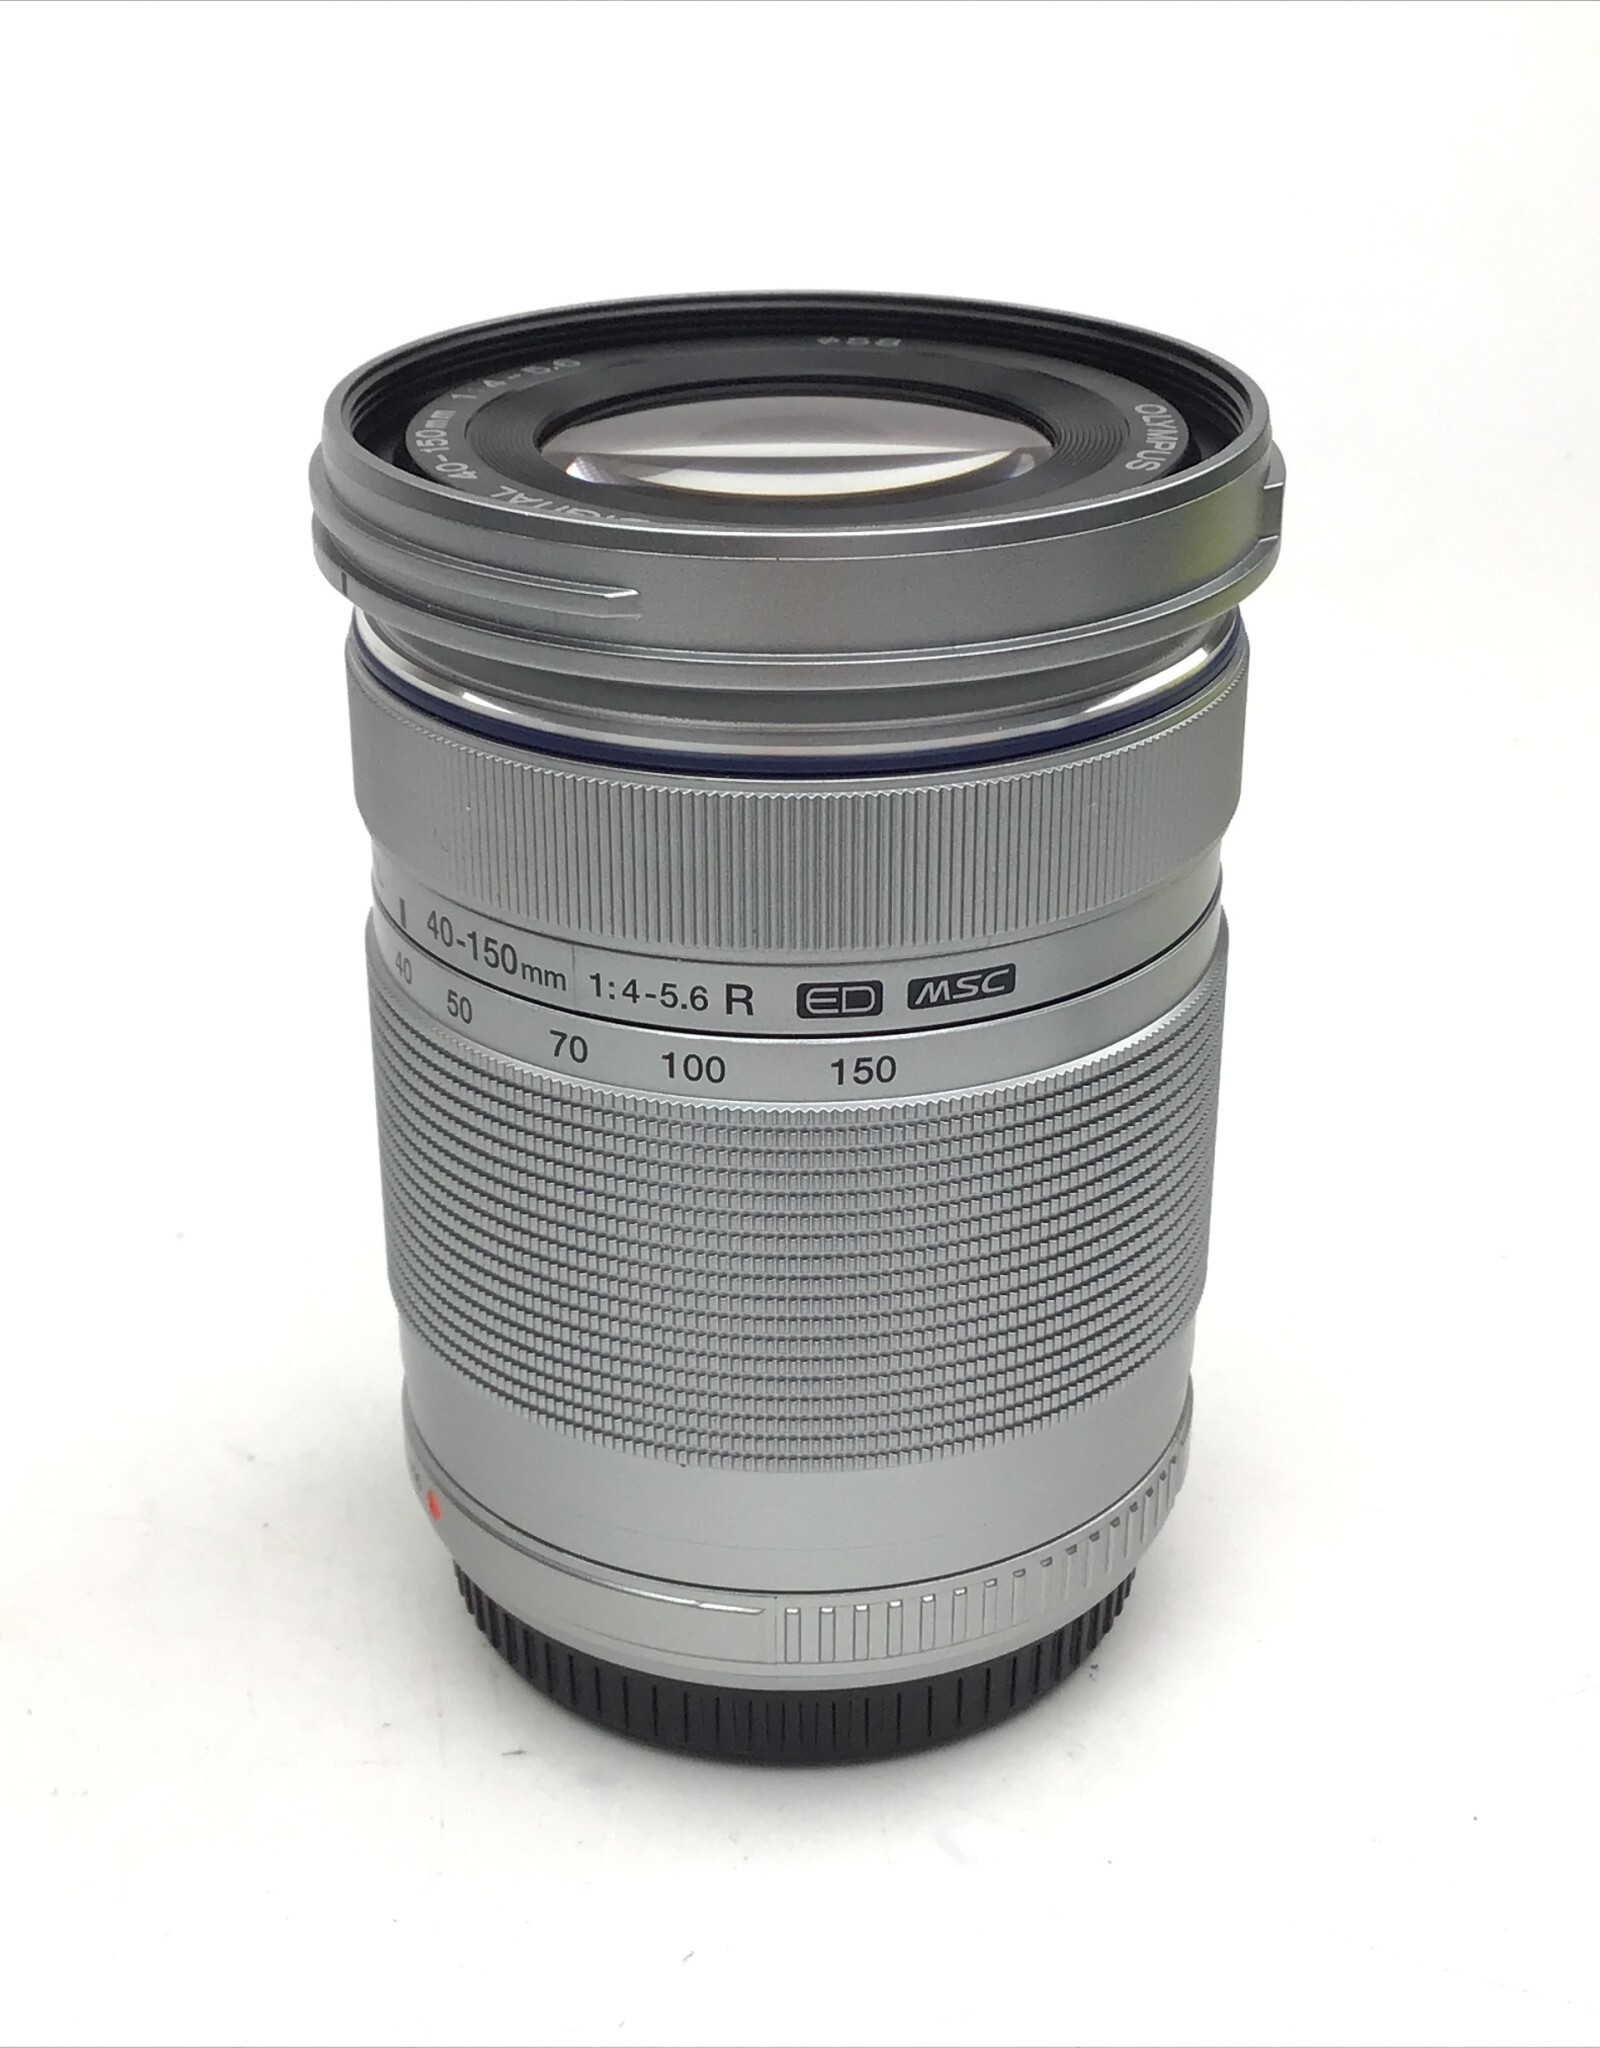 OLYMPUS Olympus ED 40-150mm f4-5.6R Lens Silver in Box Used EX